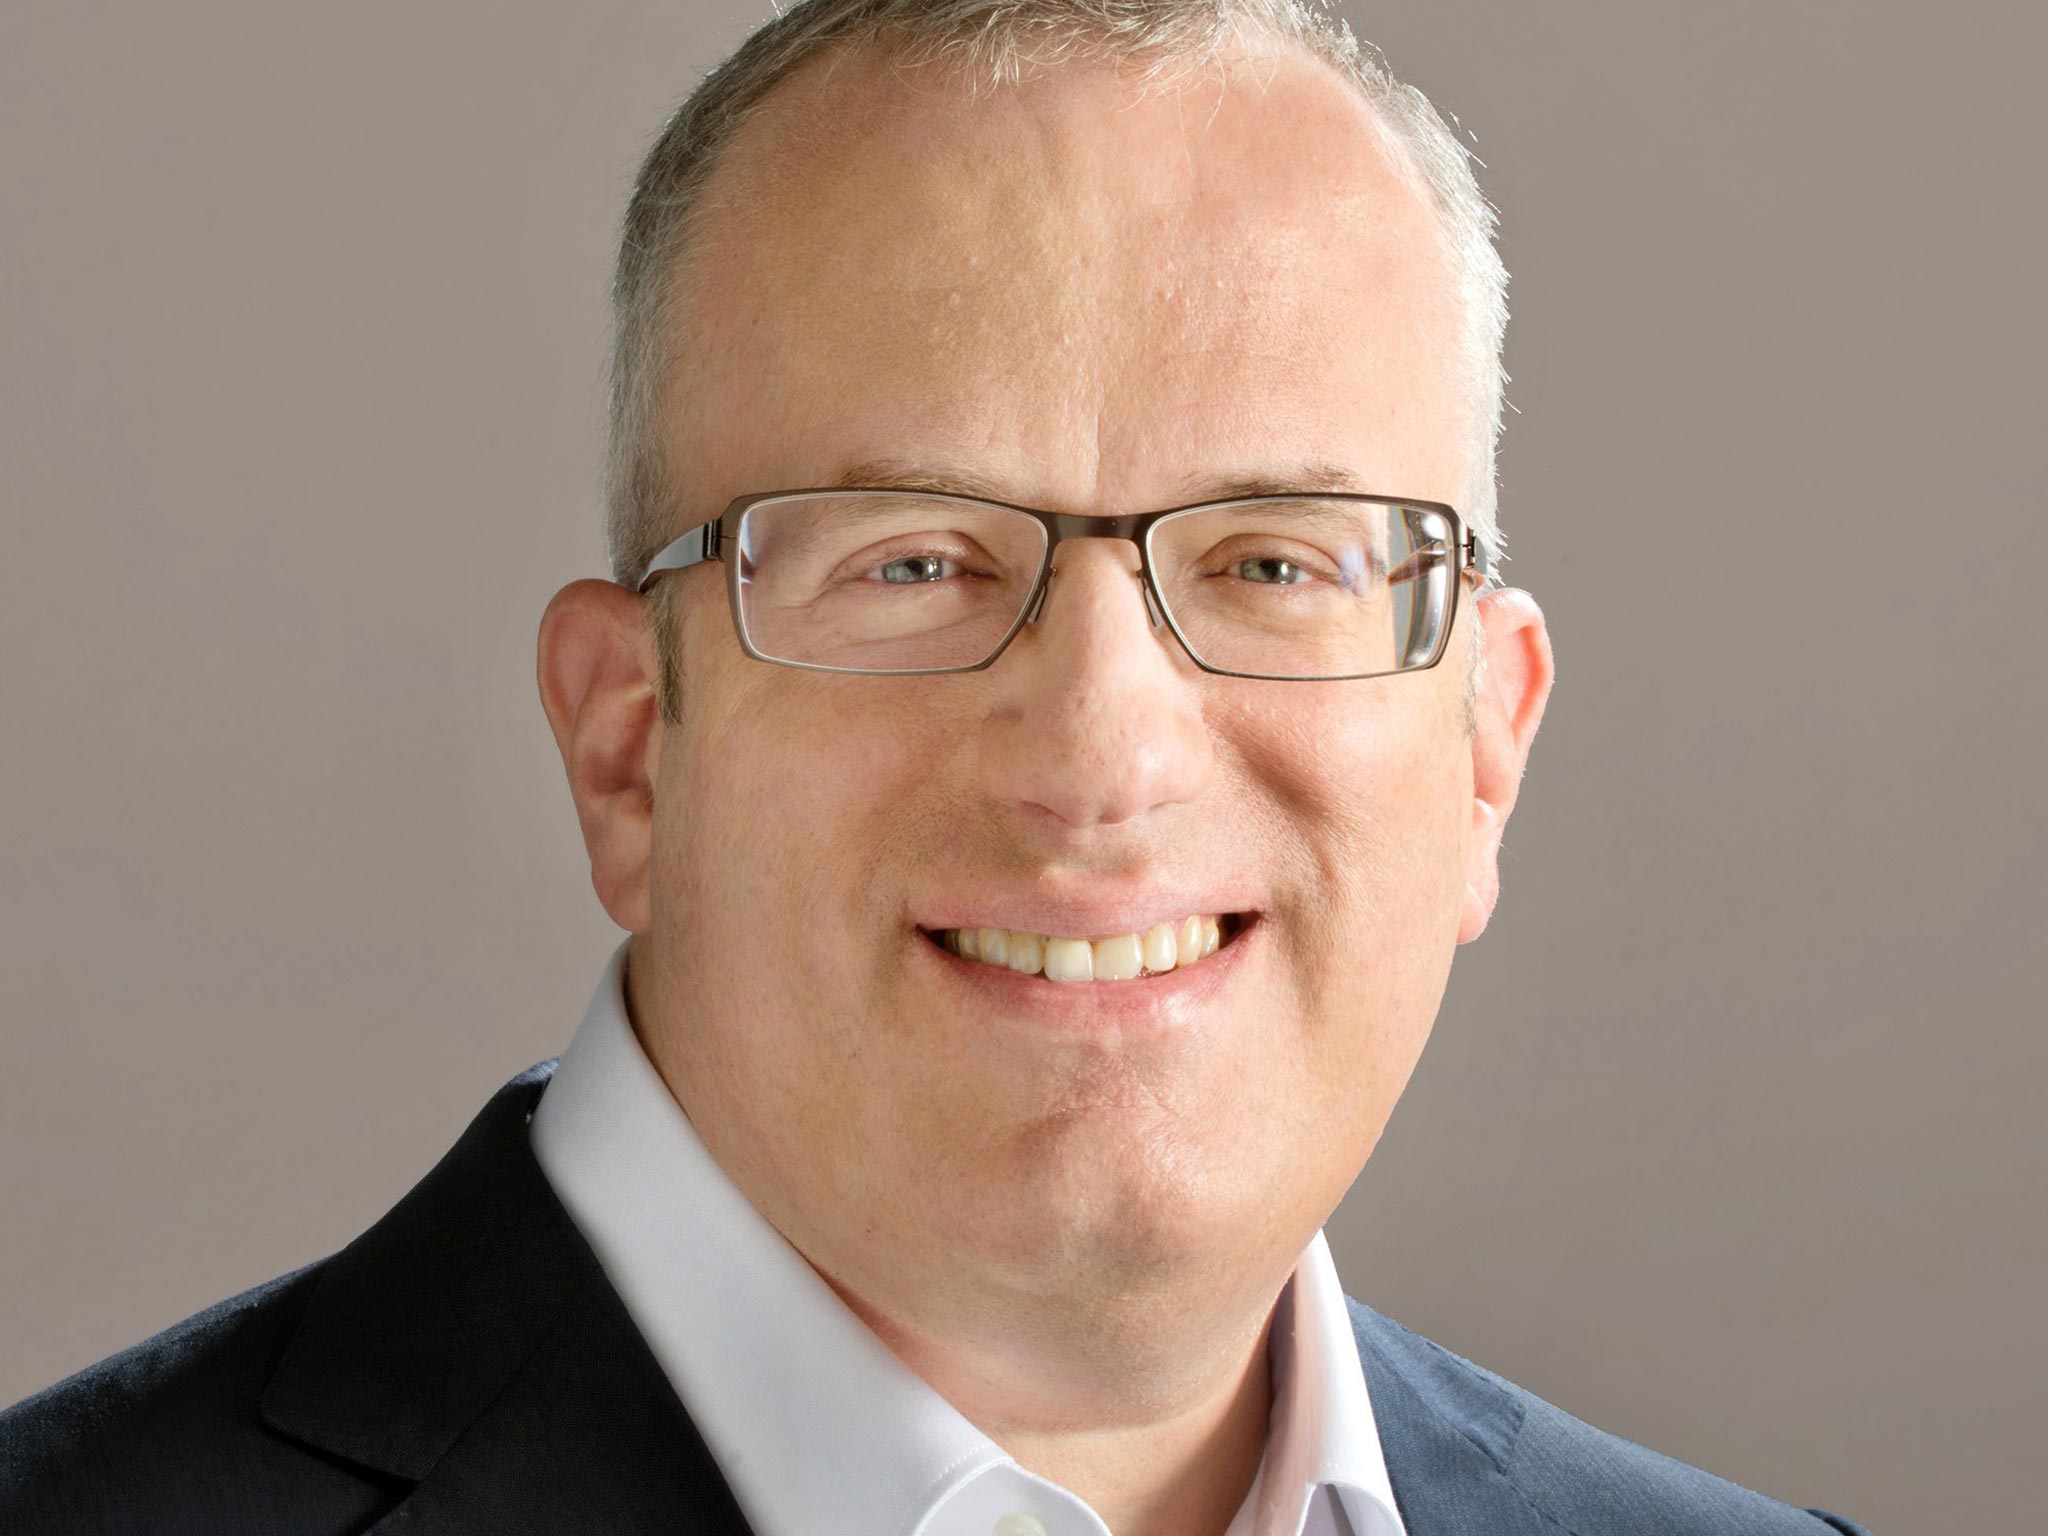 Mozilla’s ex-chief executive Brendan Eich